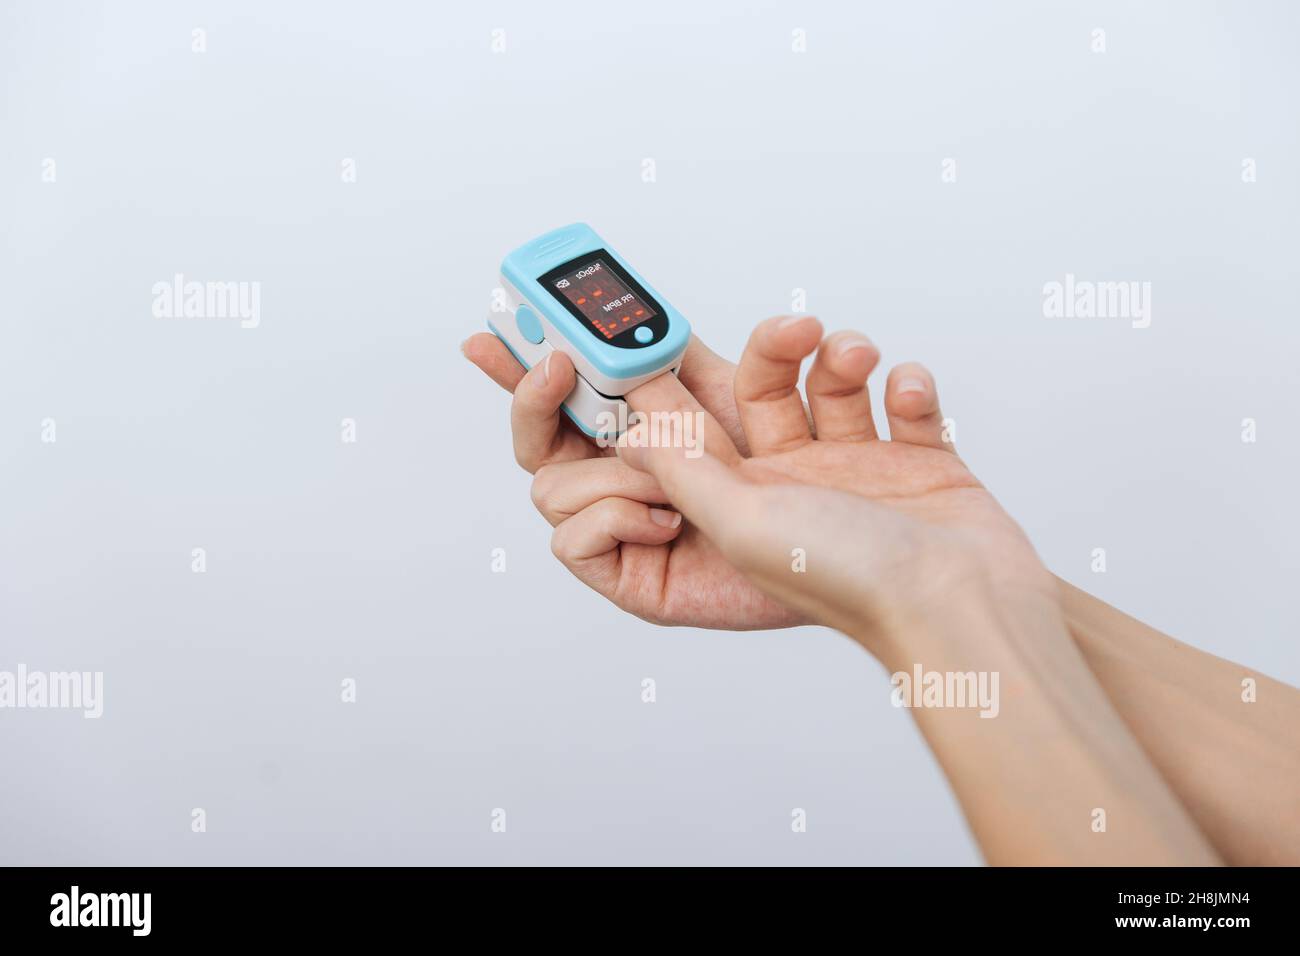 Oxymètre de pouls avec main du médecin isolé sur blanc.Le concept de dispositif numérique portable pour mesurer la saturation en oxygène de la personne.Mesure de l'oxygène Banque D'Images